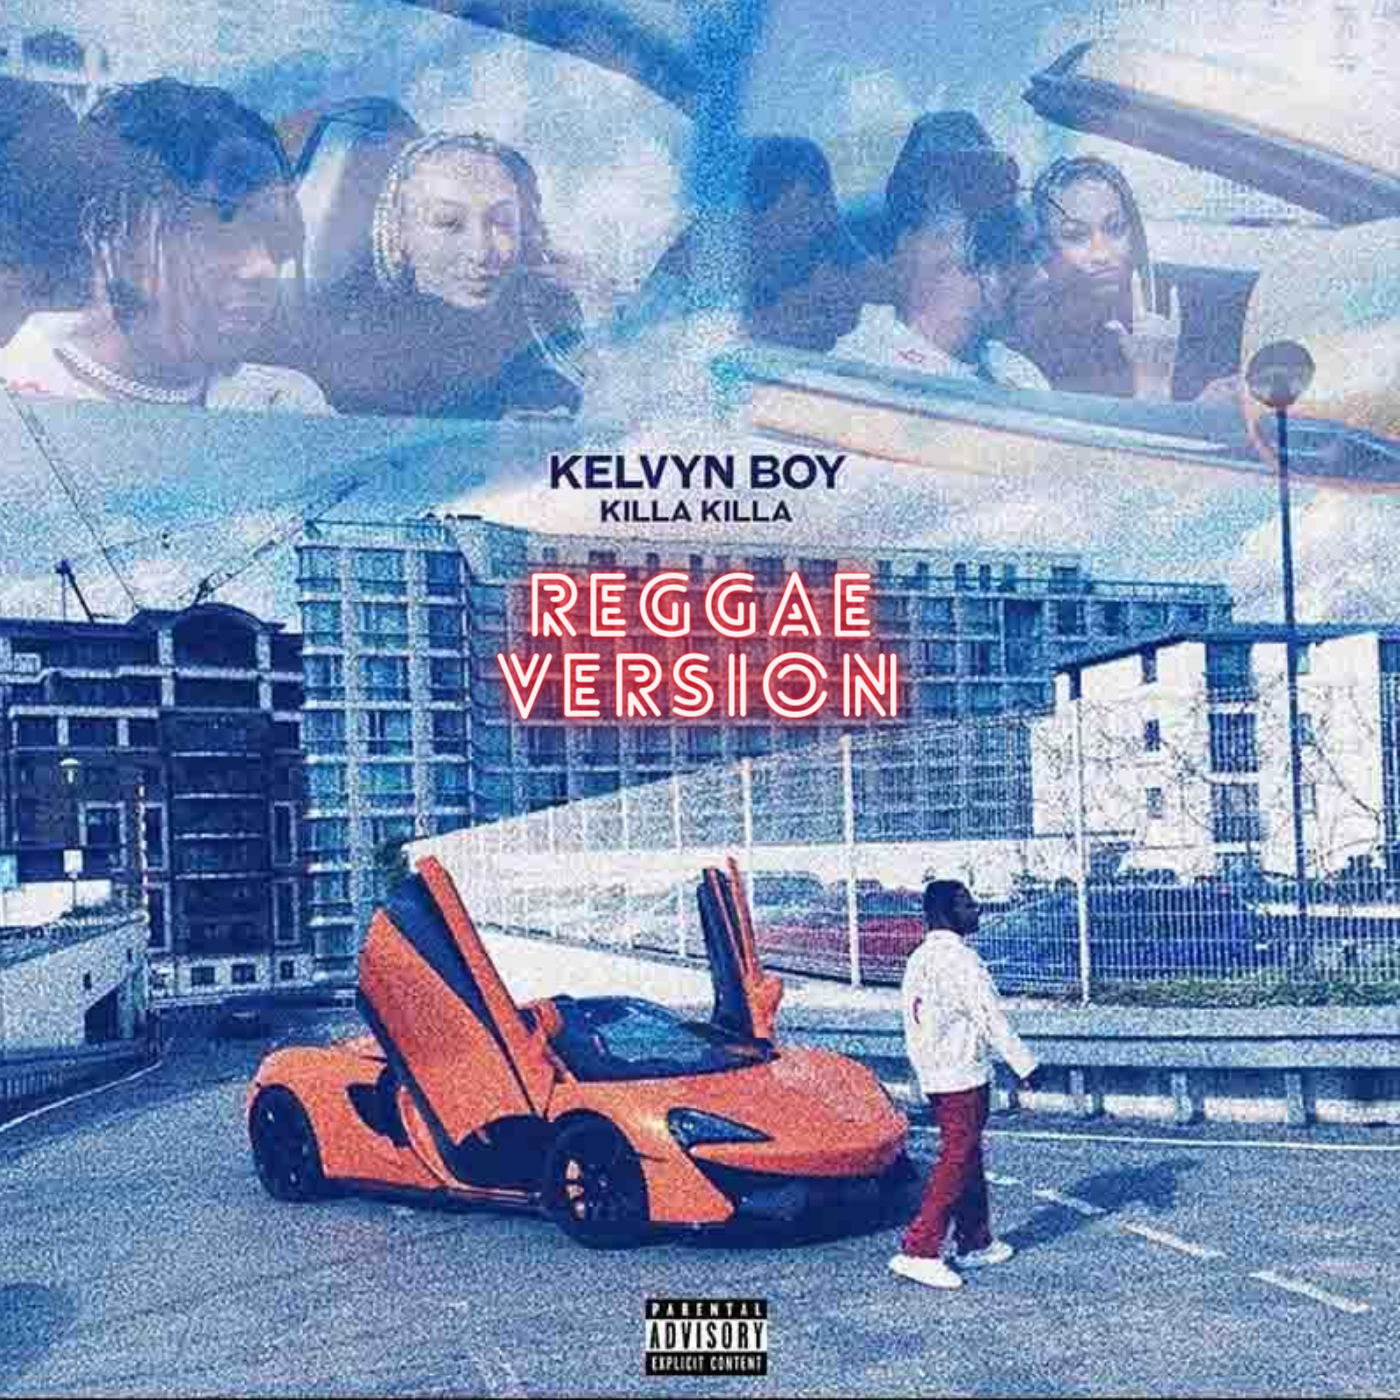 Kelvyn Boy - Killa Killa Reggae Version(By Maxi Konnect)